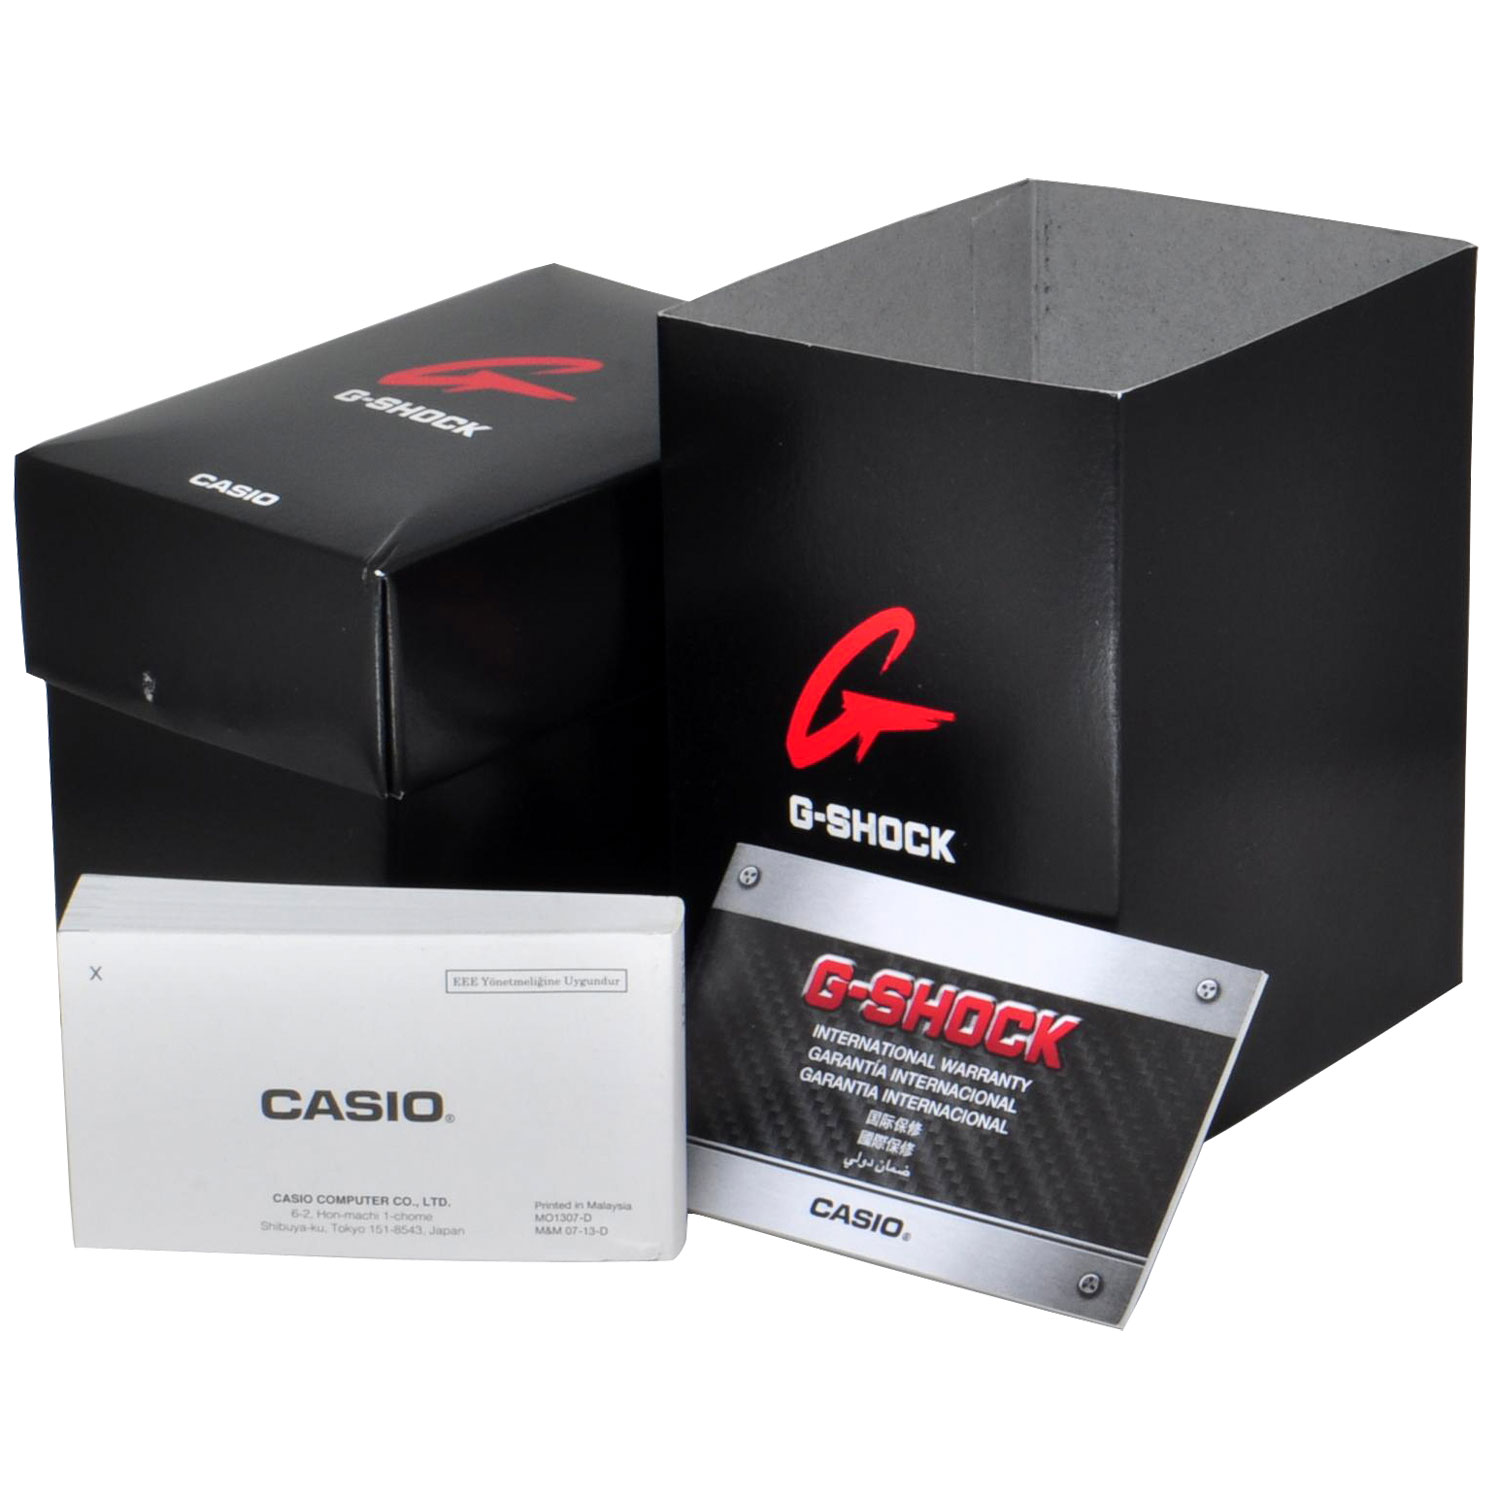 Đồng hồ nam dây nhựa Casio G-Shock chính hãng GA-100-1A1DR